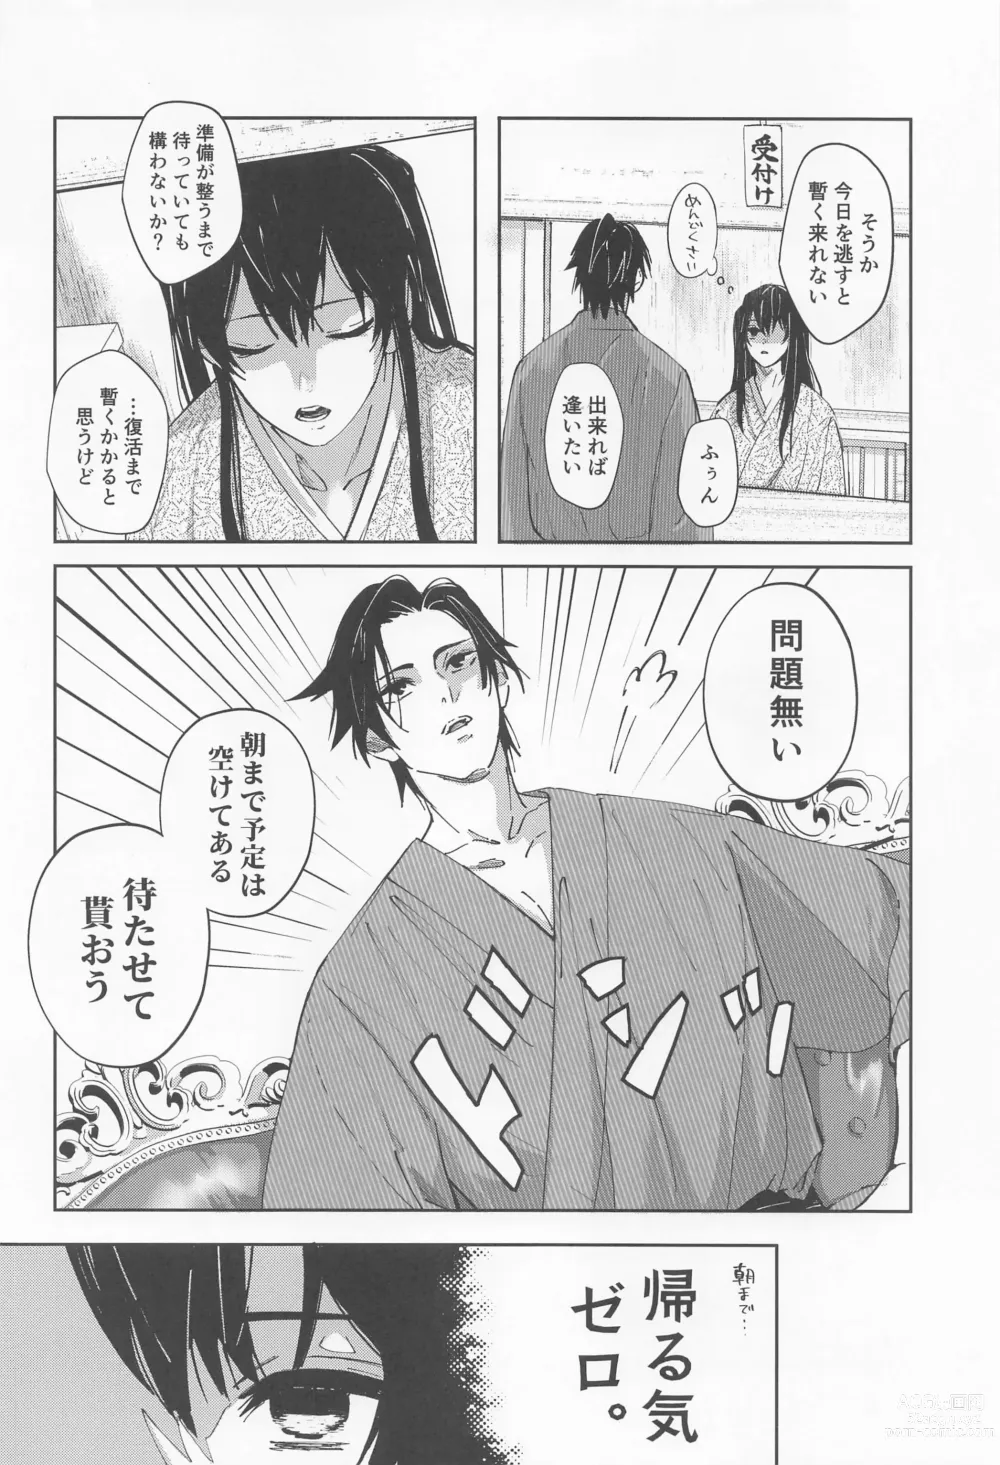 Page 9 of doujinshi Utakata  First volume